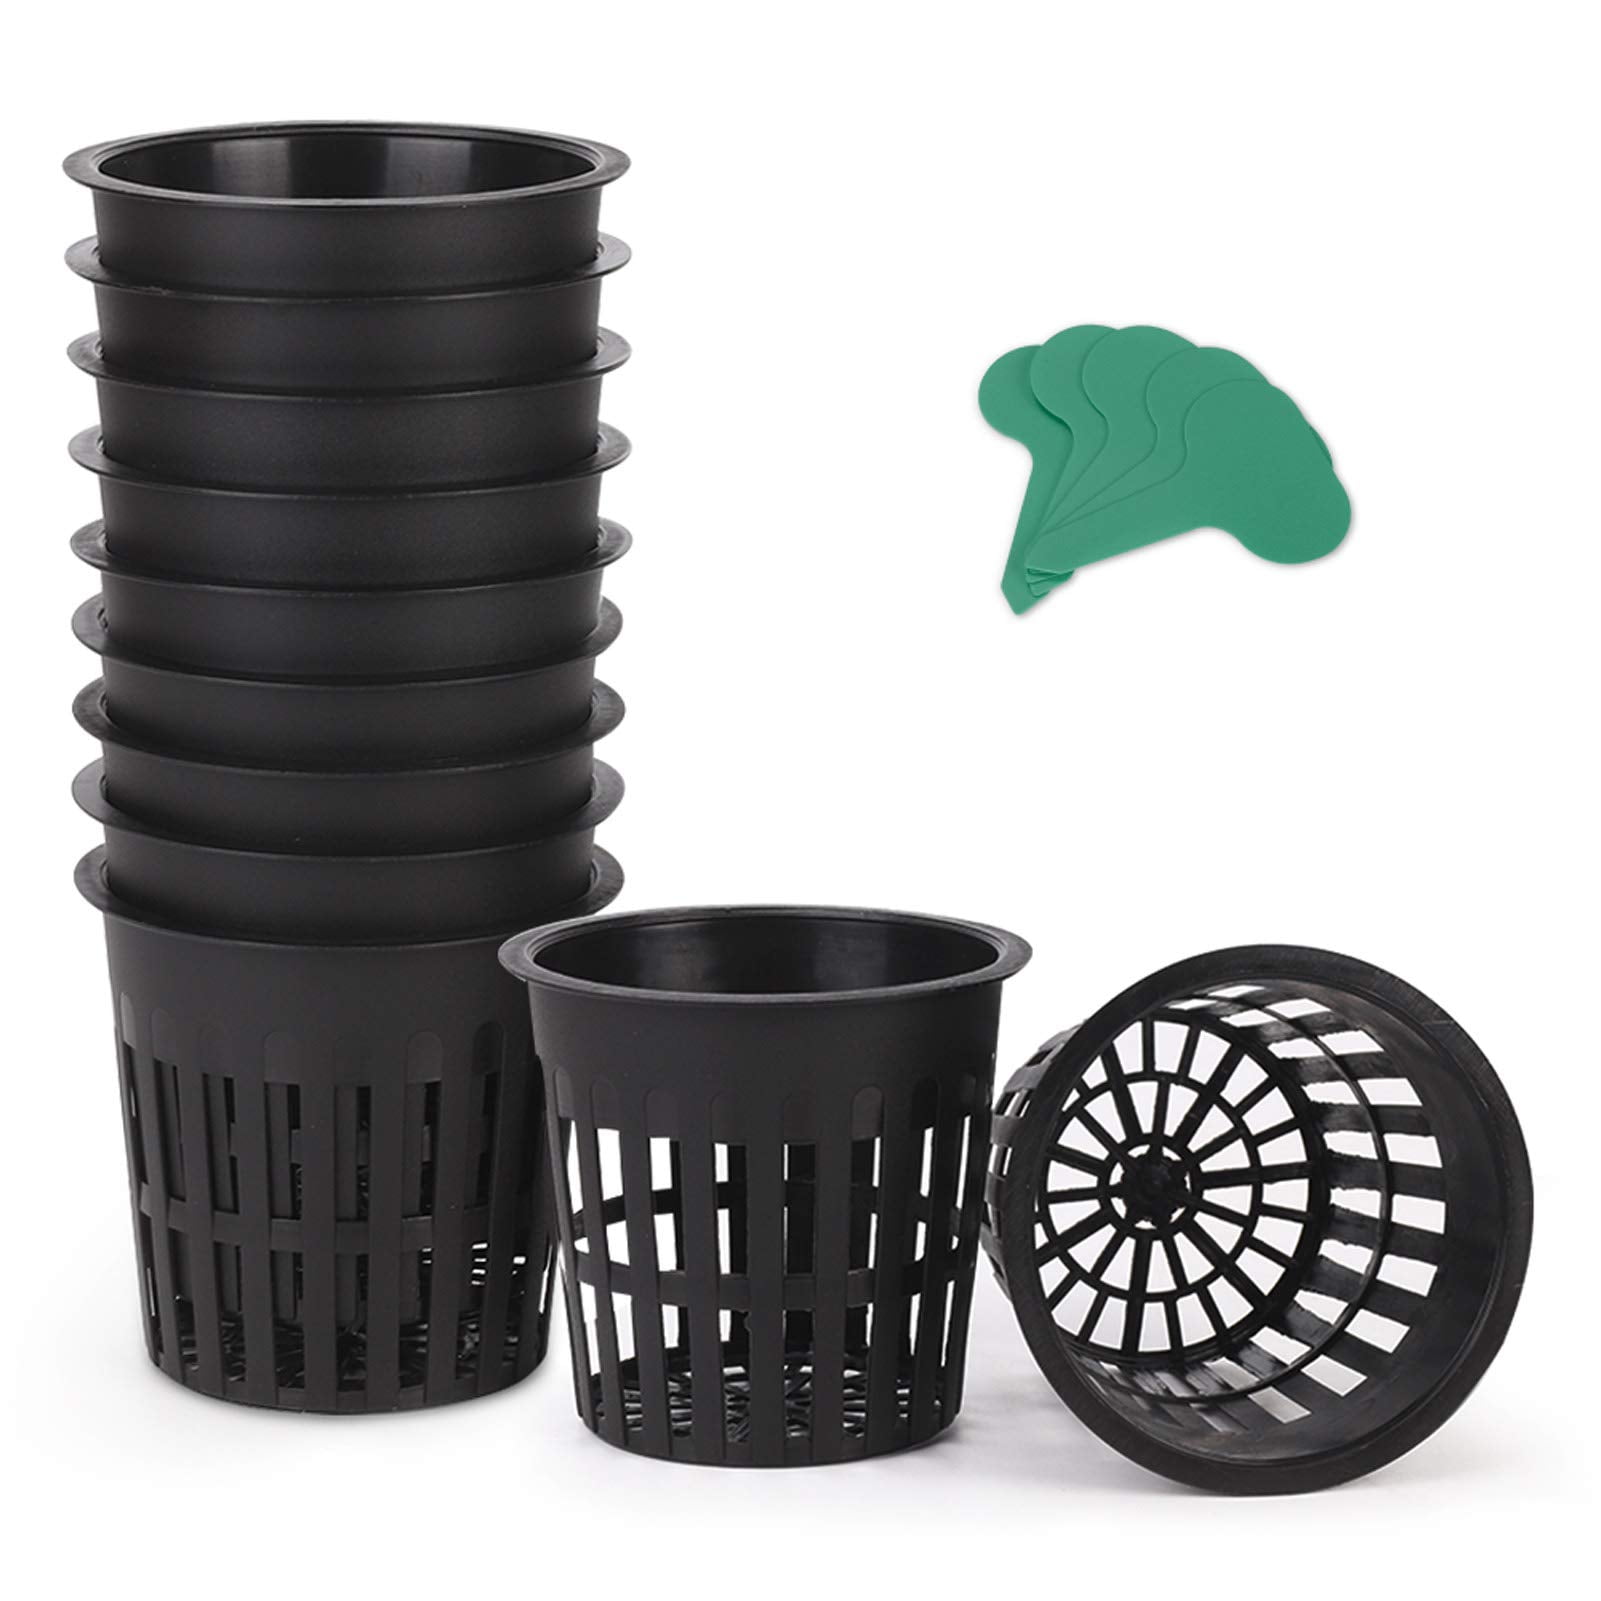 Square Orchid Pot Plastic Basket 4 inches Black Color Home Garden Decor 25 Pcs 